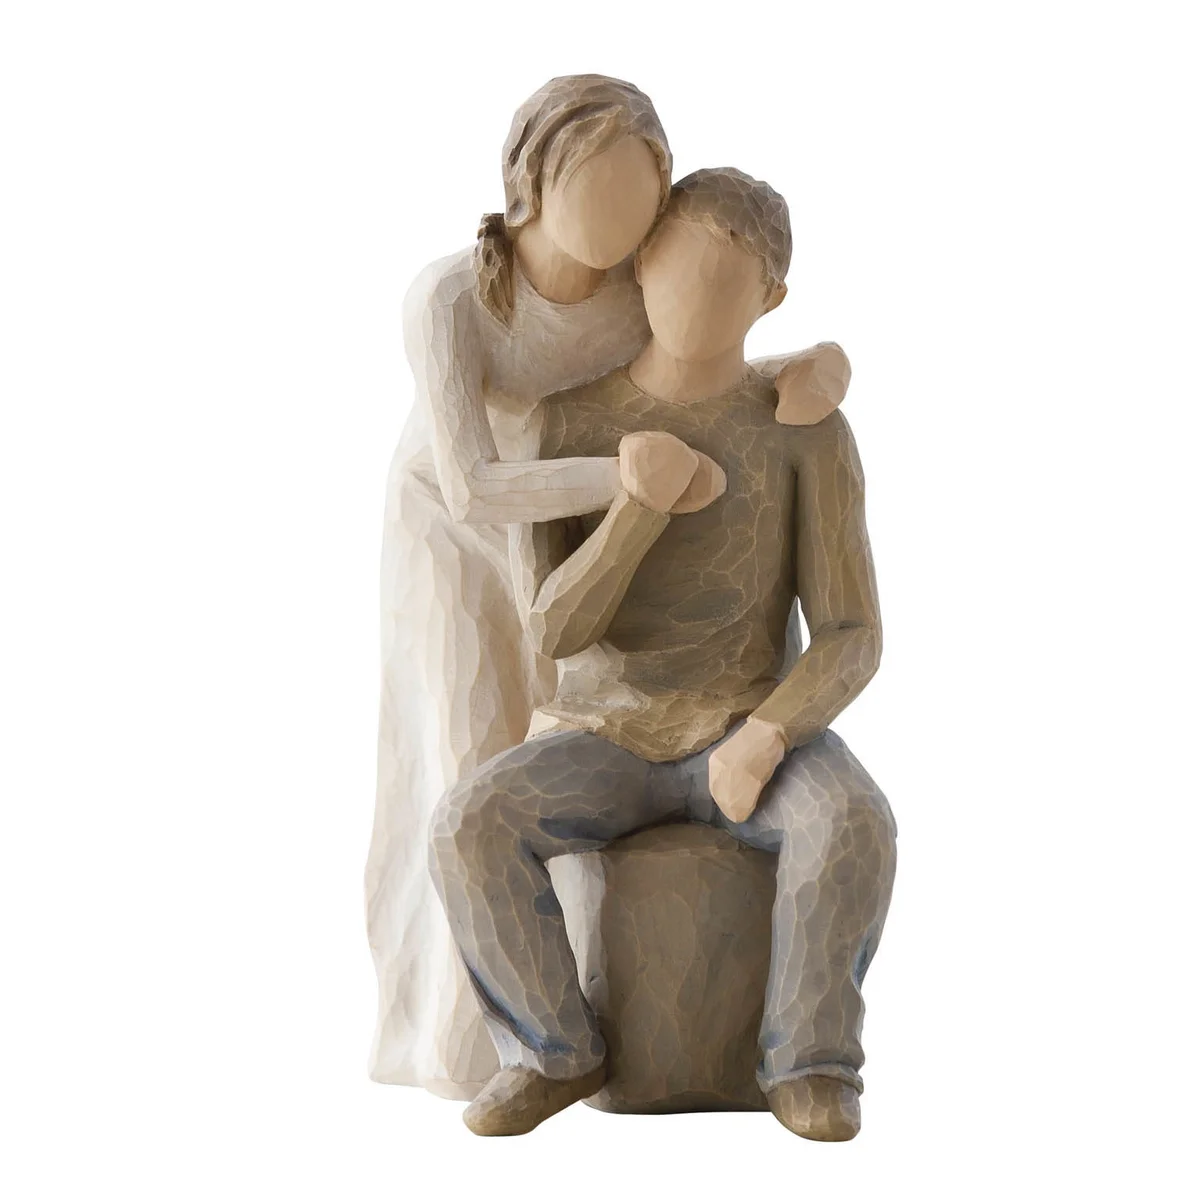 Statyett av en man och en kvinna från Willow tree 18 cm